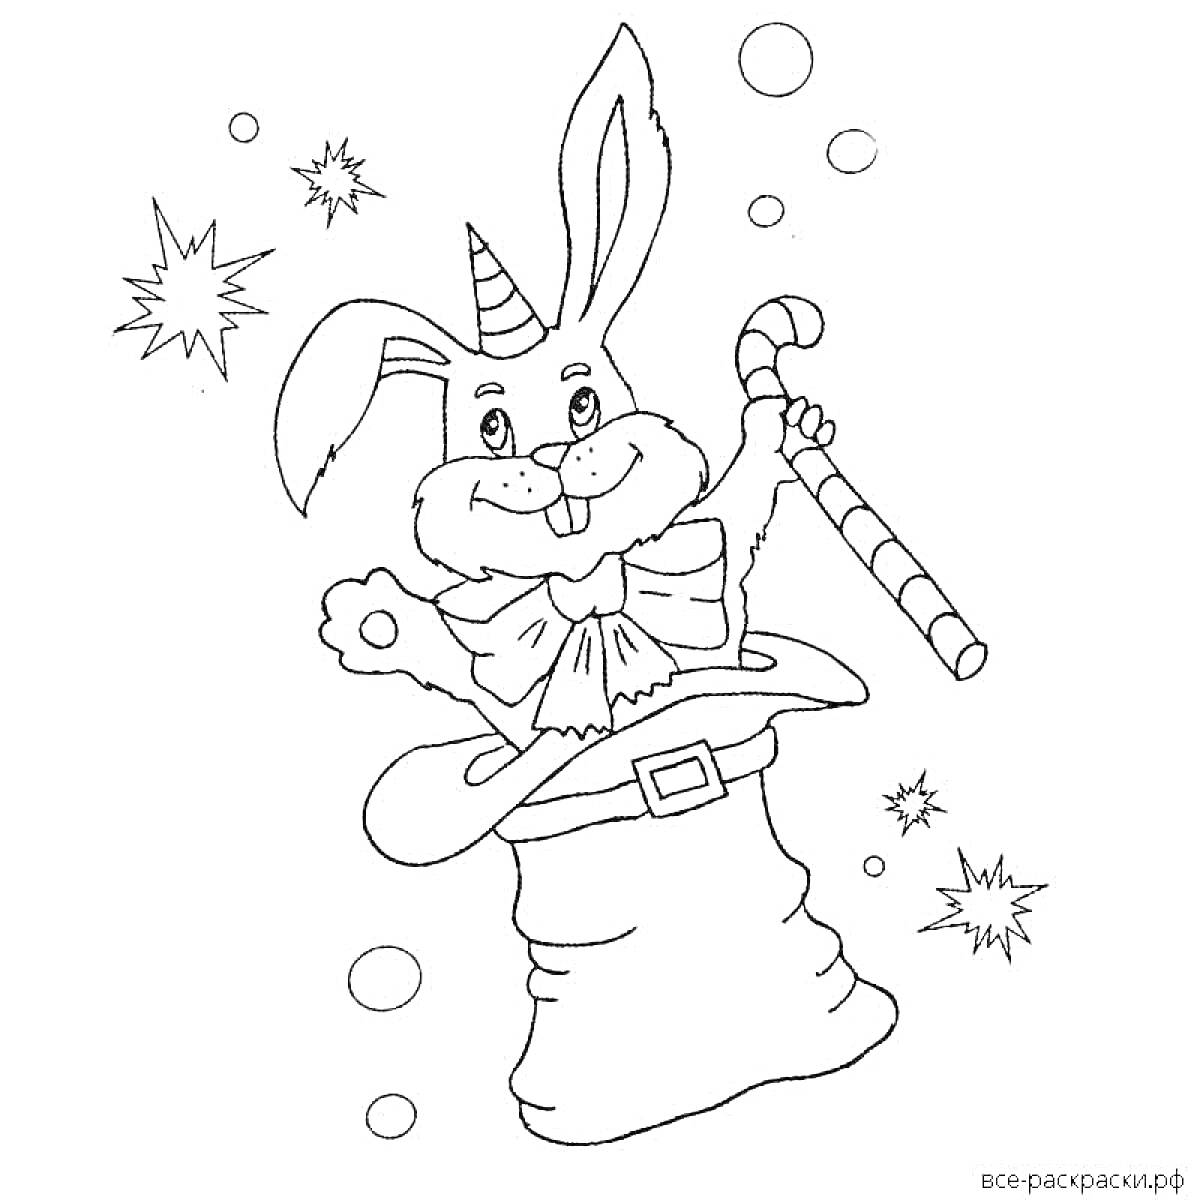 Раскраска Новогодний заяц с леденцом в колпаке, круги и звезды вокруг